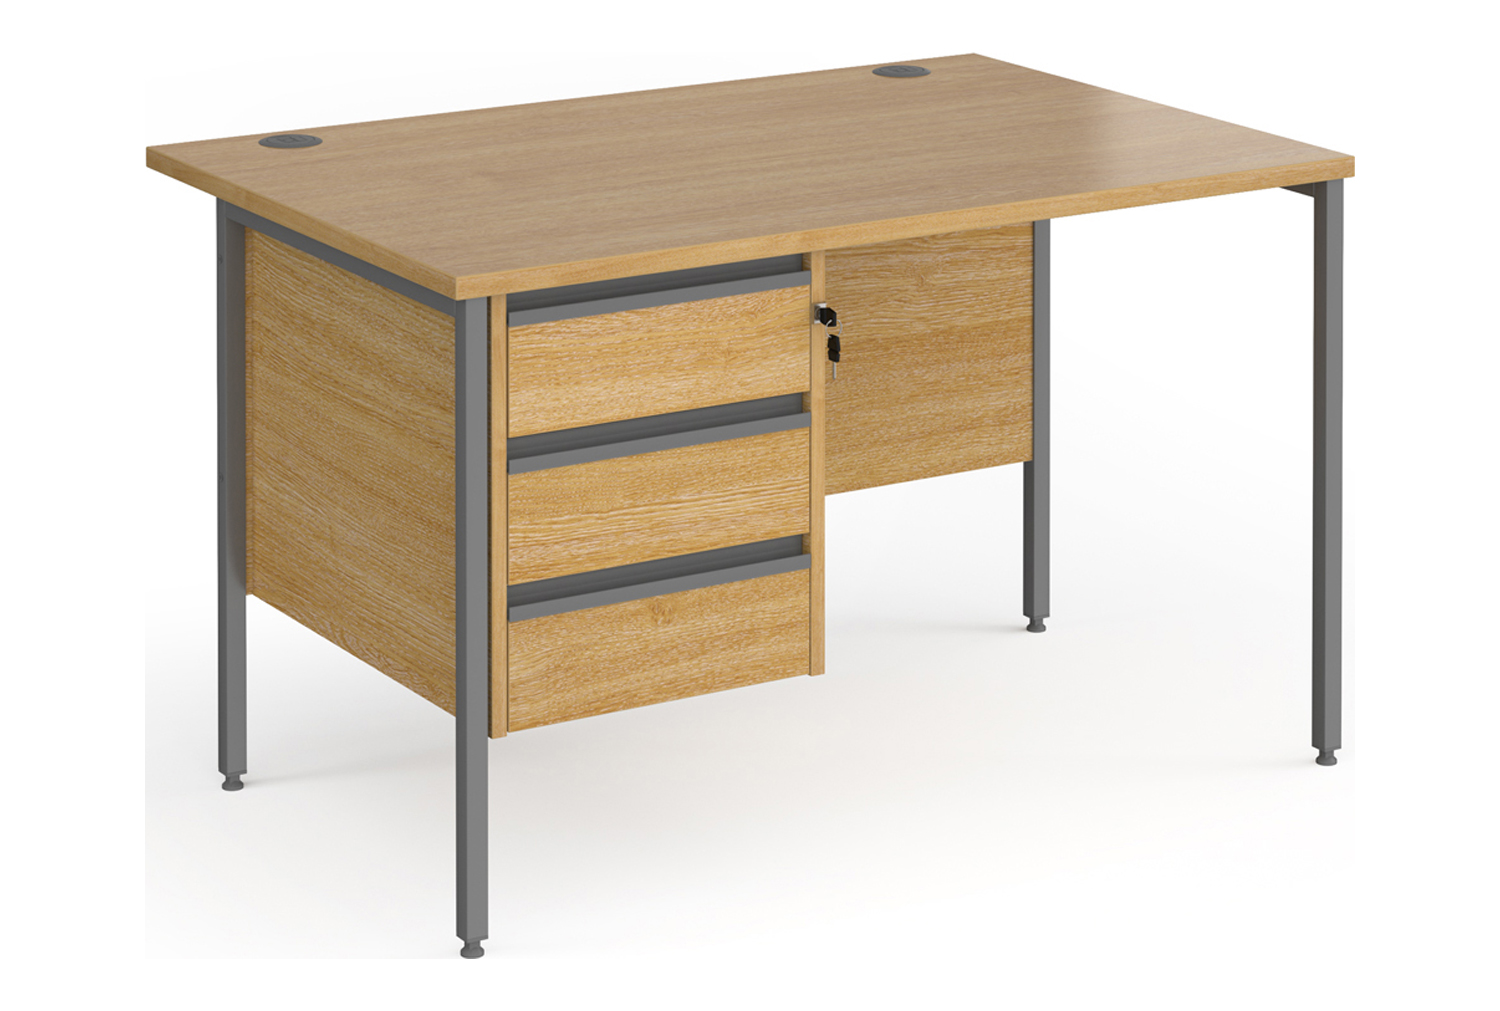 Value Line Classic+ Rectangular H-Leg Office Desk 3 Drawers (Graphite Leg), 120wx80dx73h (cm), Oak, Fully Installed